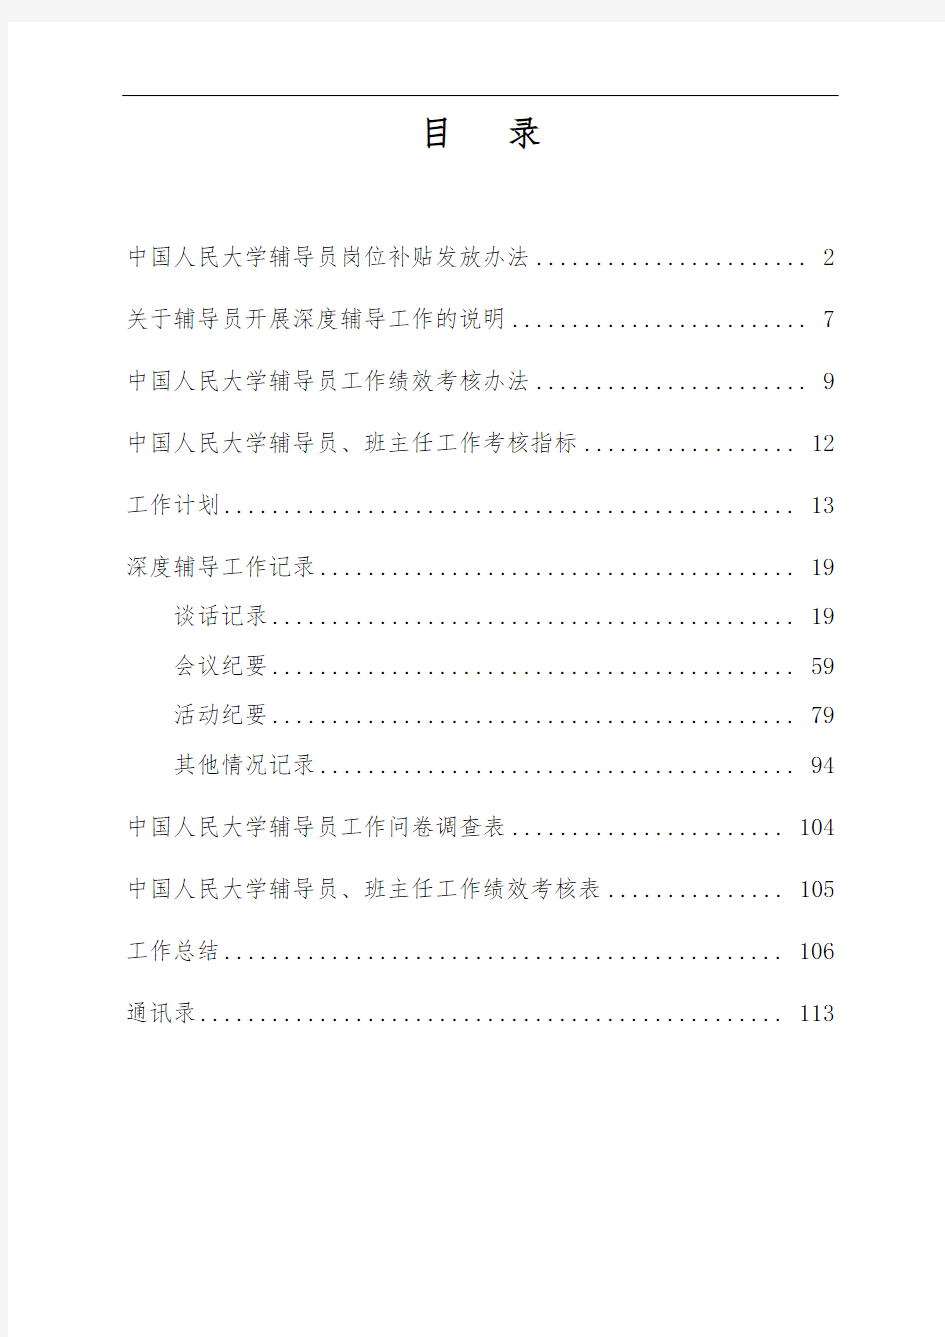 中国人民大学辅导员工作手册范本